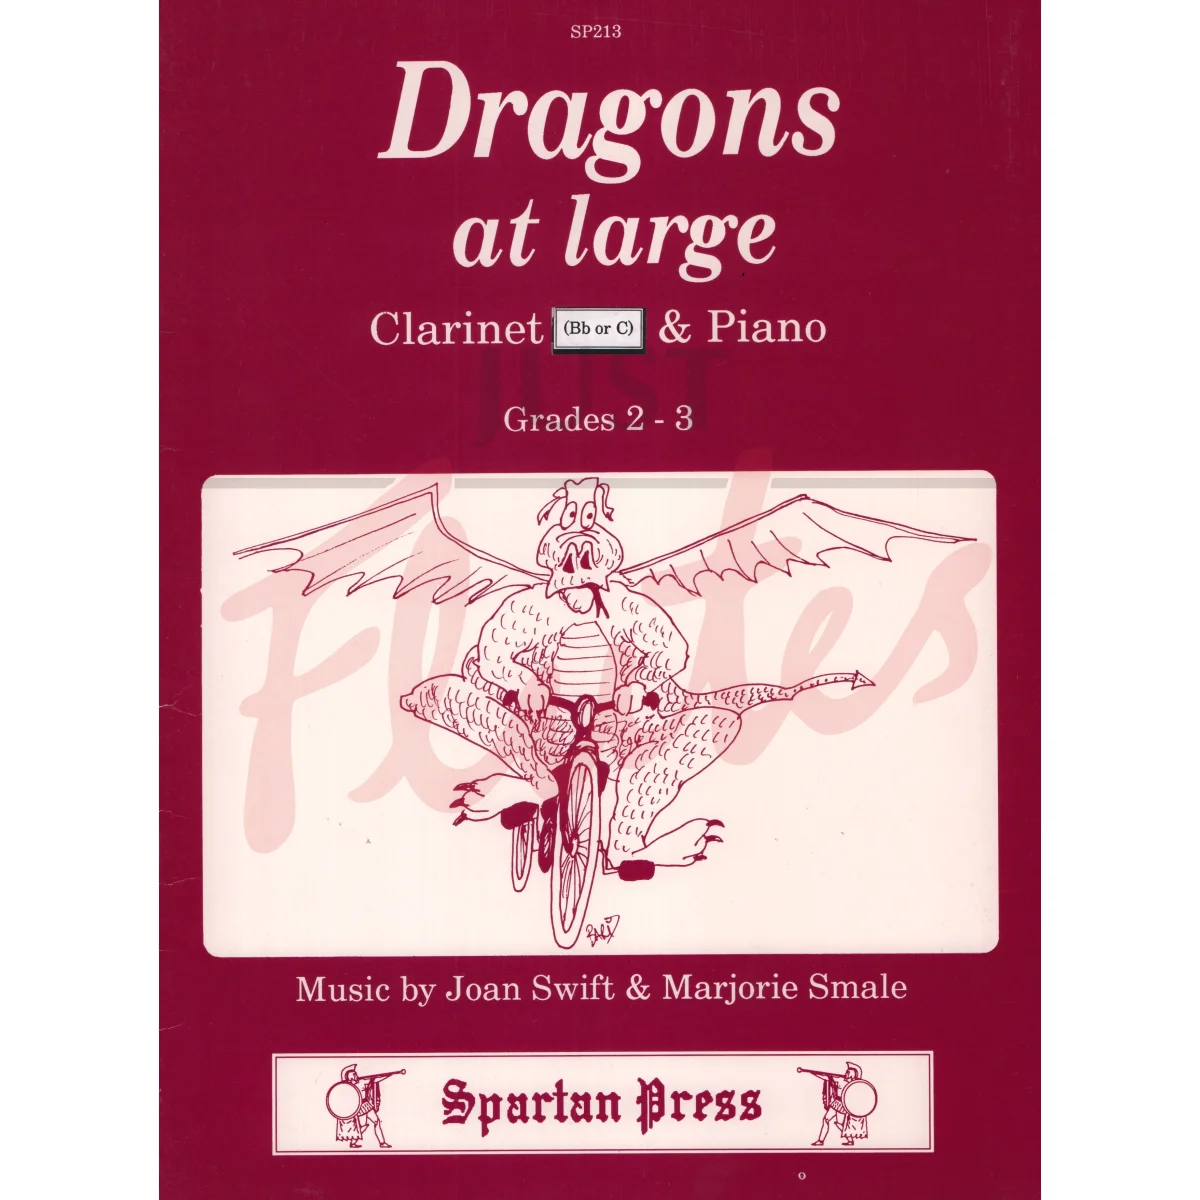 Dragons at Large